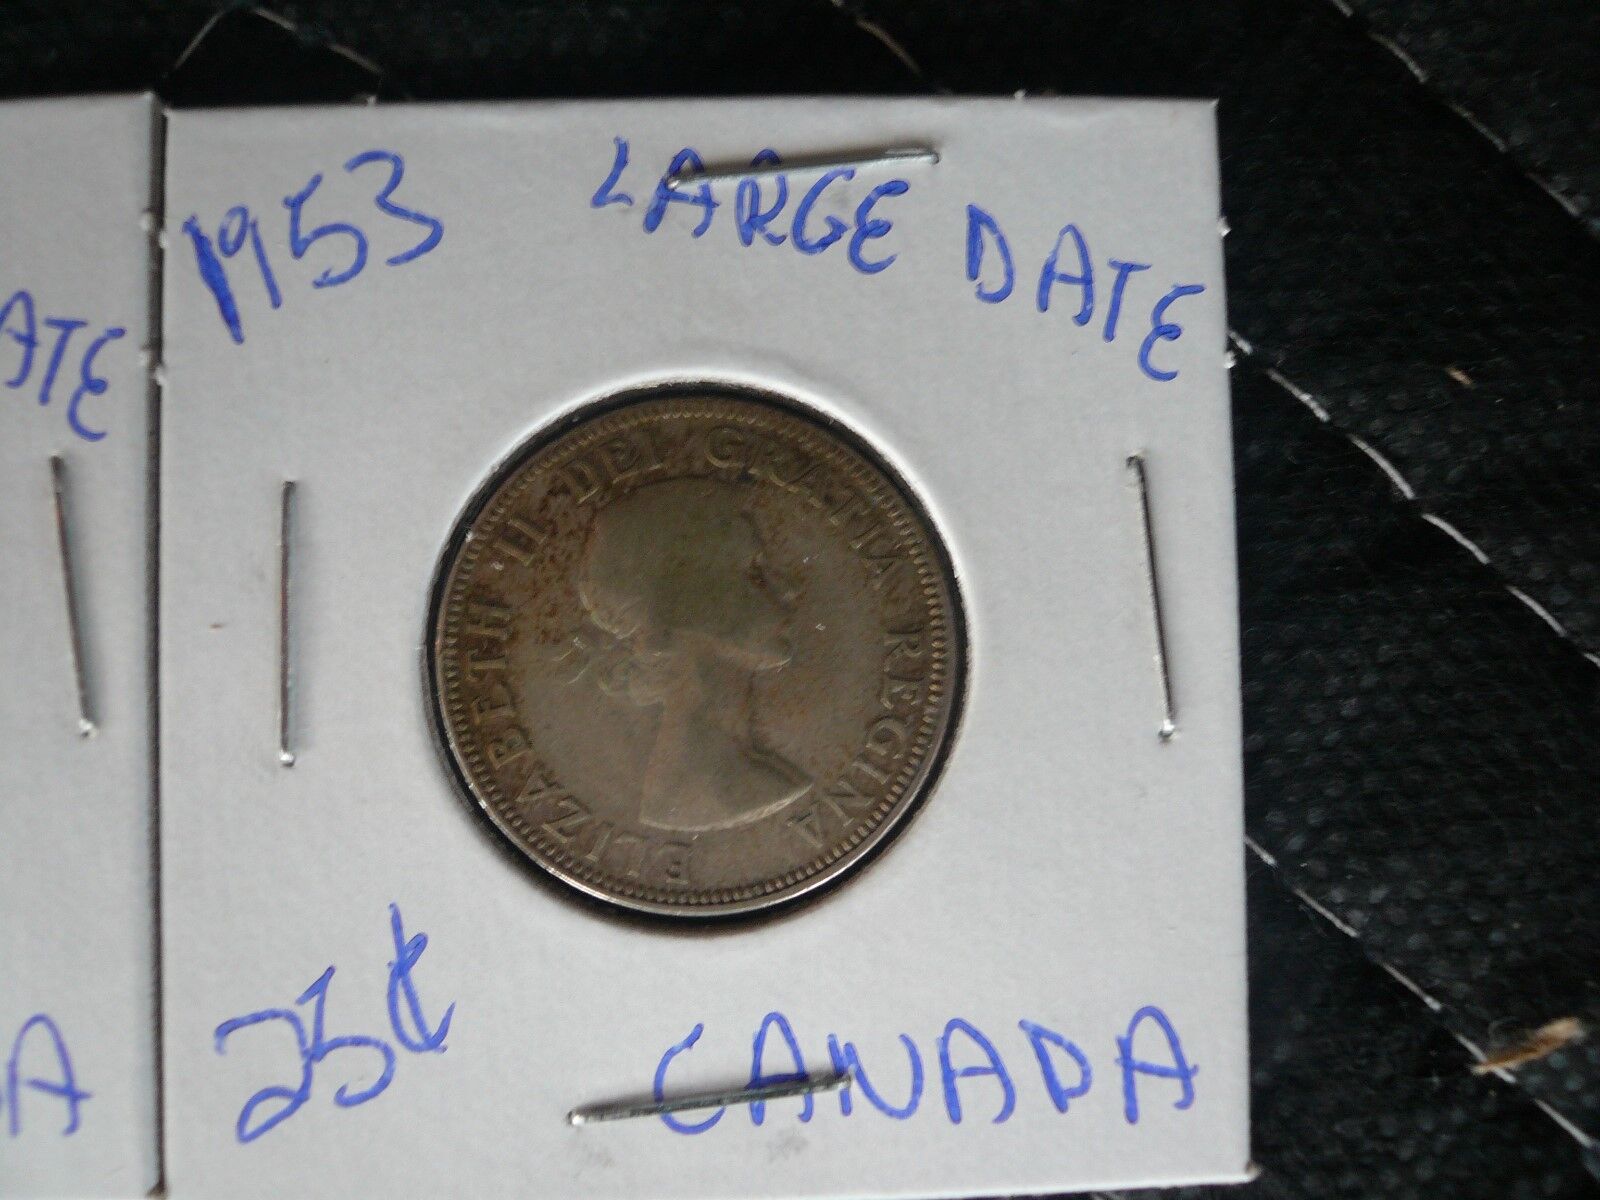 1953  CANADA 25 CENTS "LARGE DATE 1953" ELIZABETH II 80% SILVER SET OF 2 COINS Без бренда - фотография #2